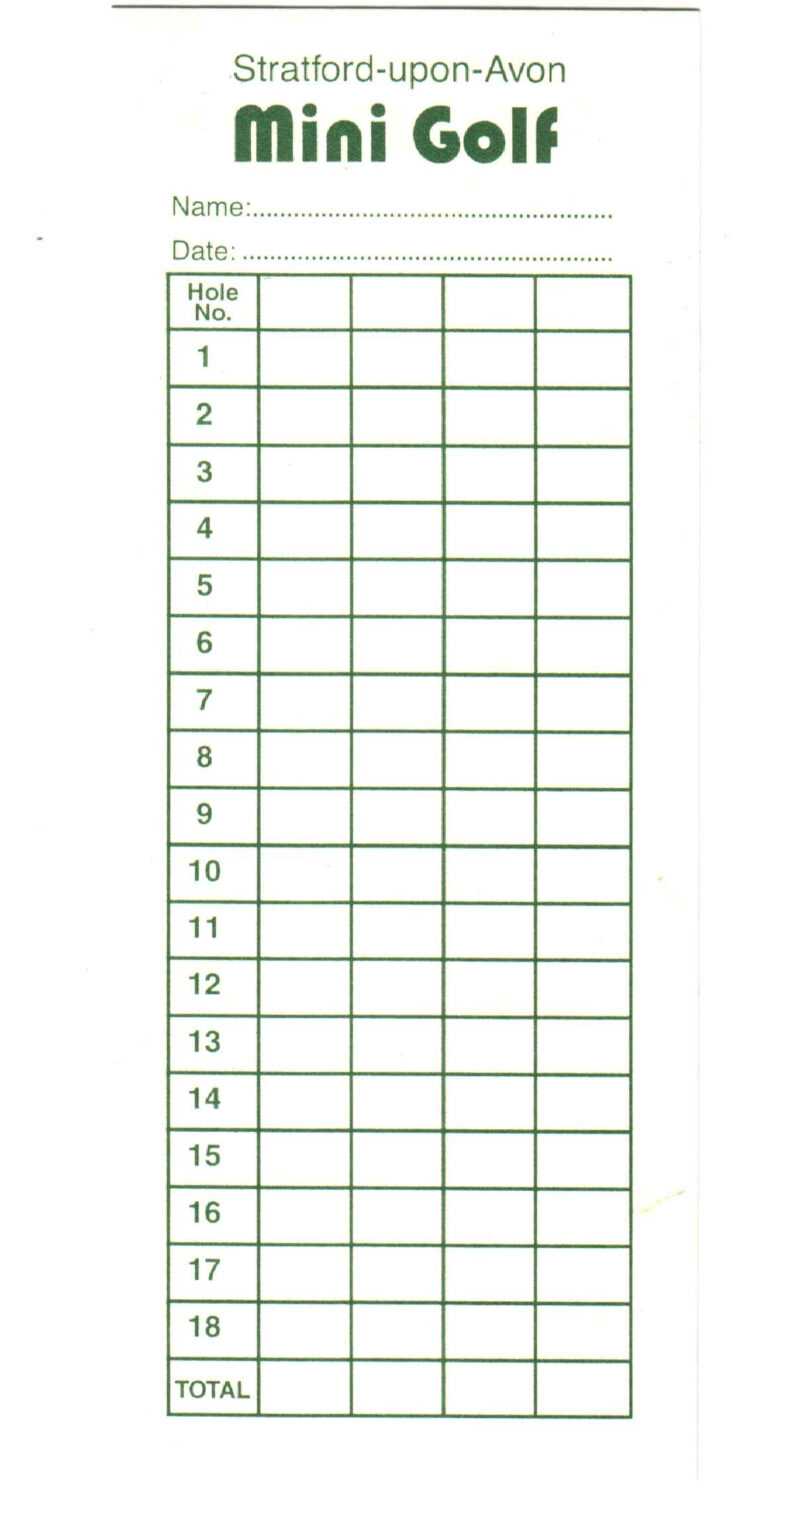 Mini Golf Scorecard Template Colona rsd7 For Golf Score Cards Template Best Template Ideas